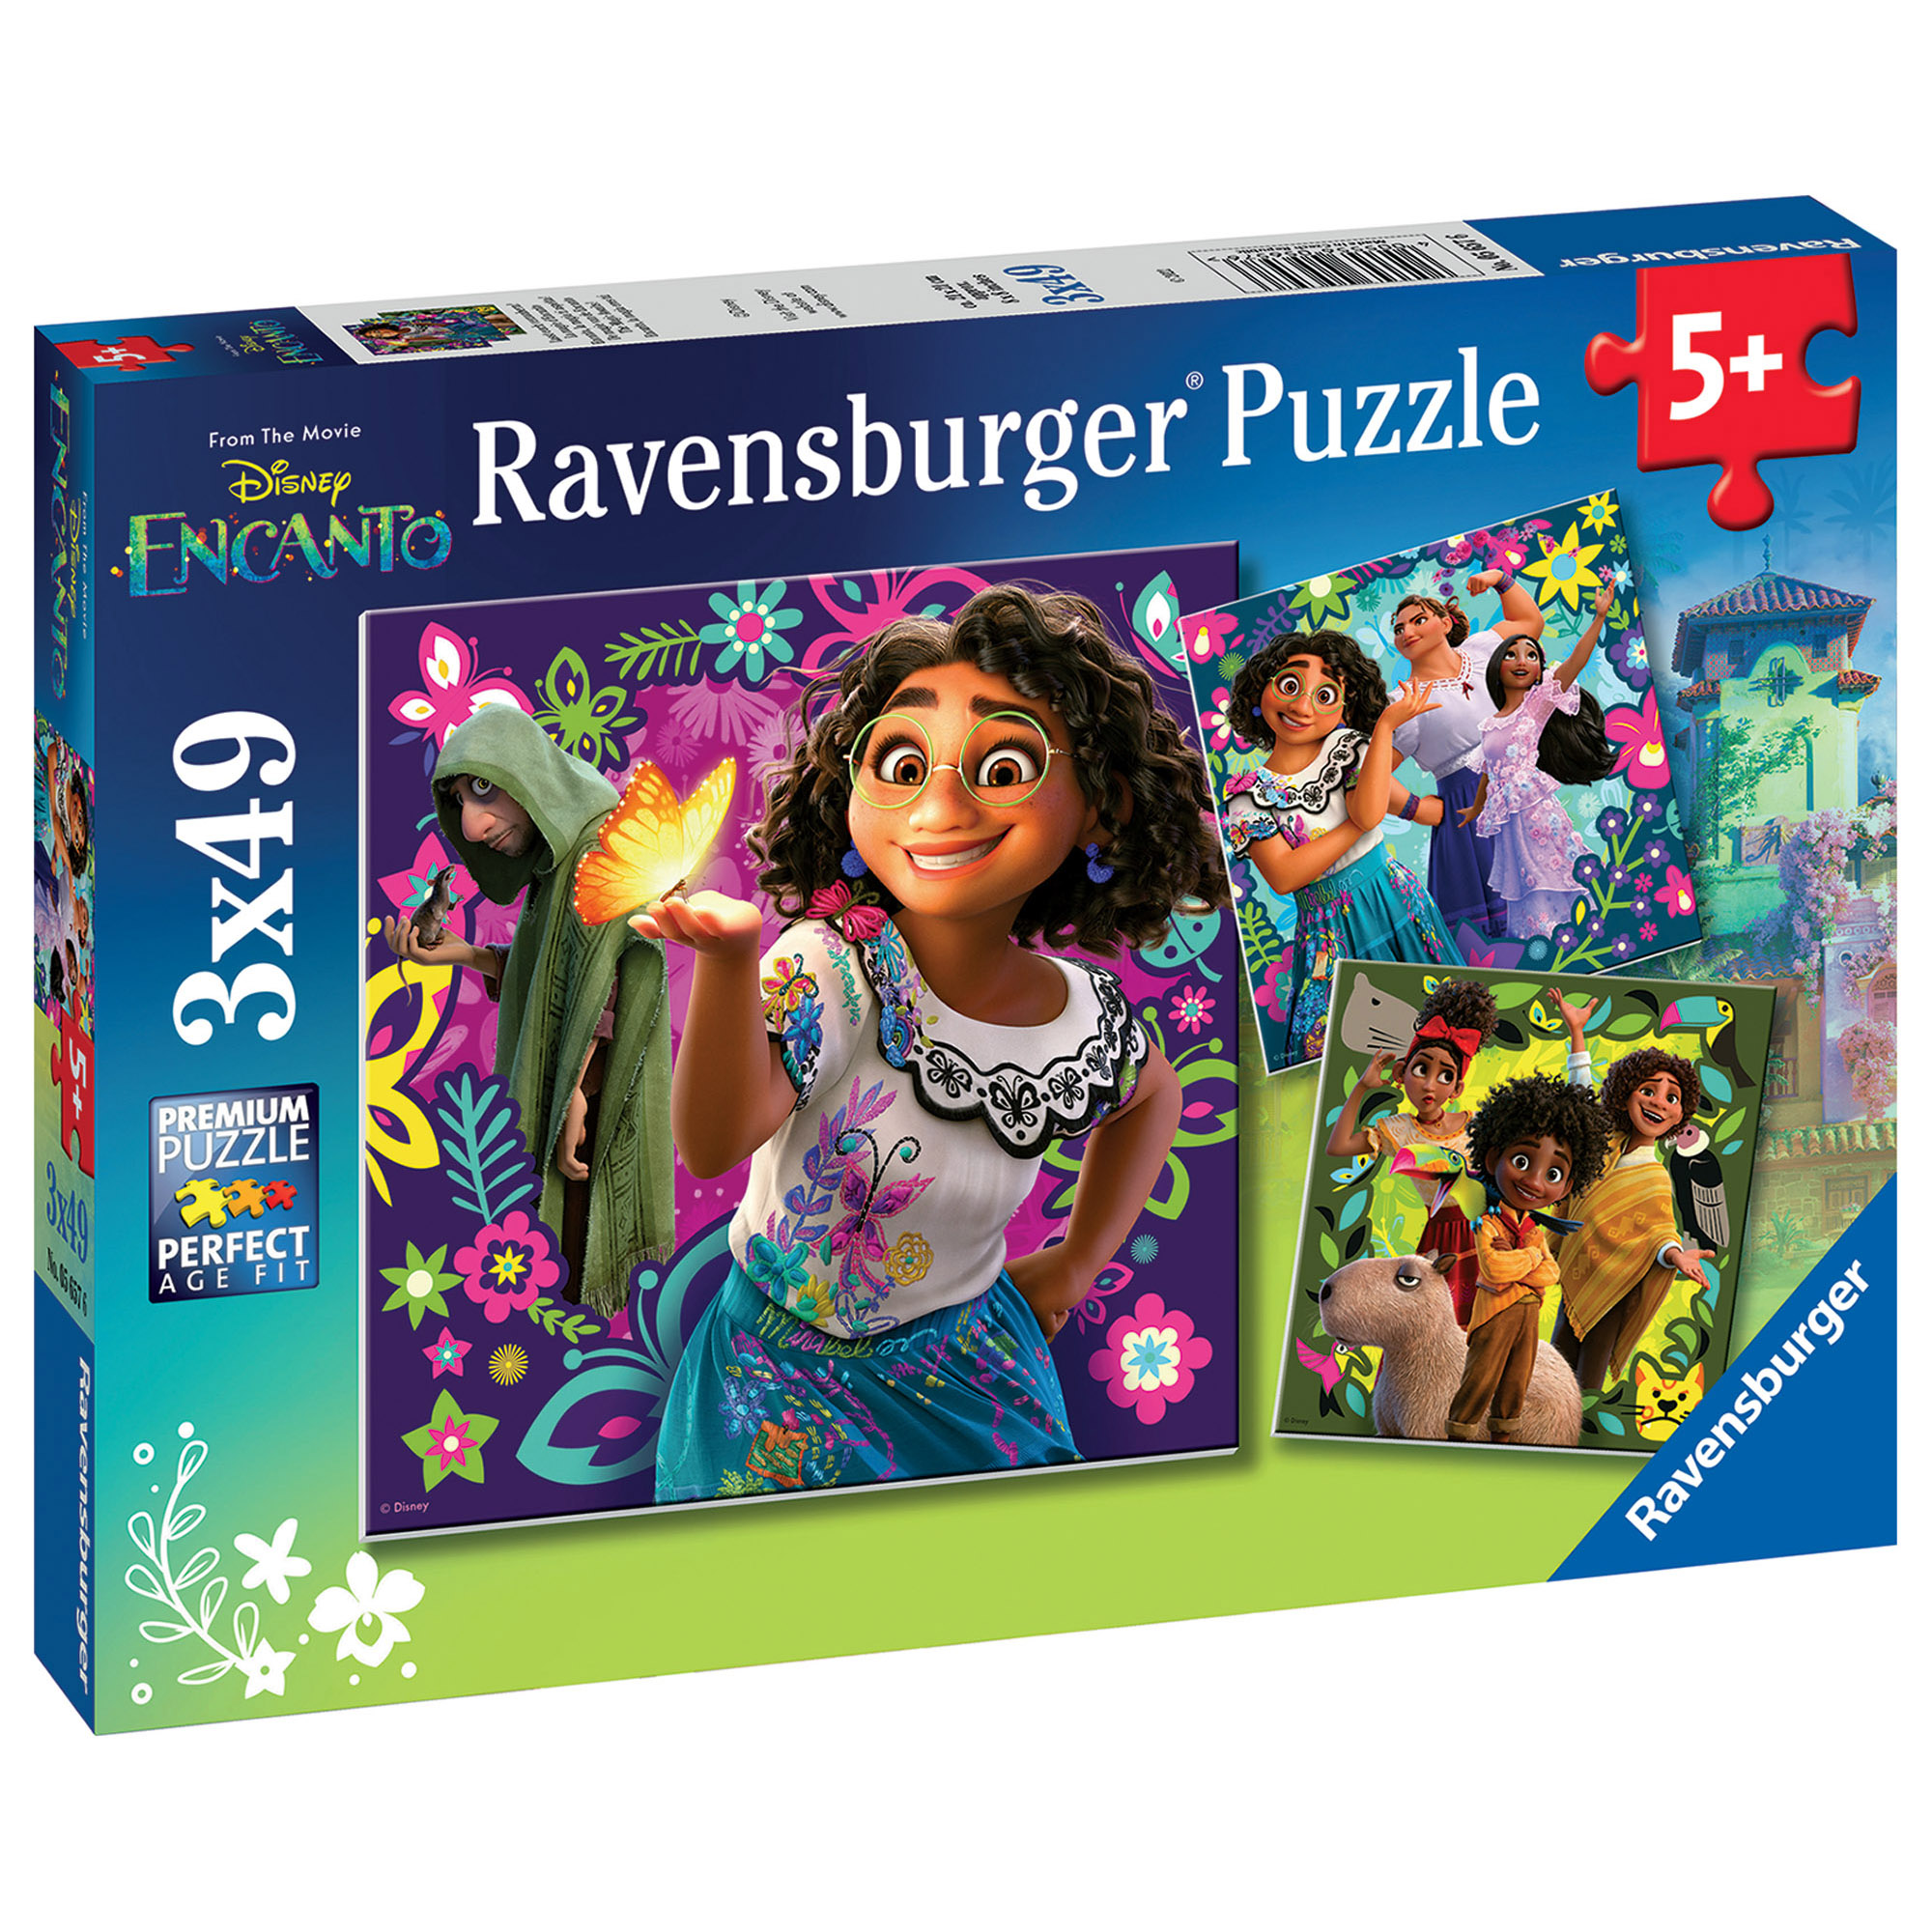 Ravensburger - puzzle encanto, collezione 3x49, 3 puzzle da 49 pezzi, età raccomandata 5+ anni - DISNEY PRINCESS, ENCANTO, RAVENSBURGER